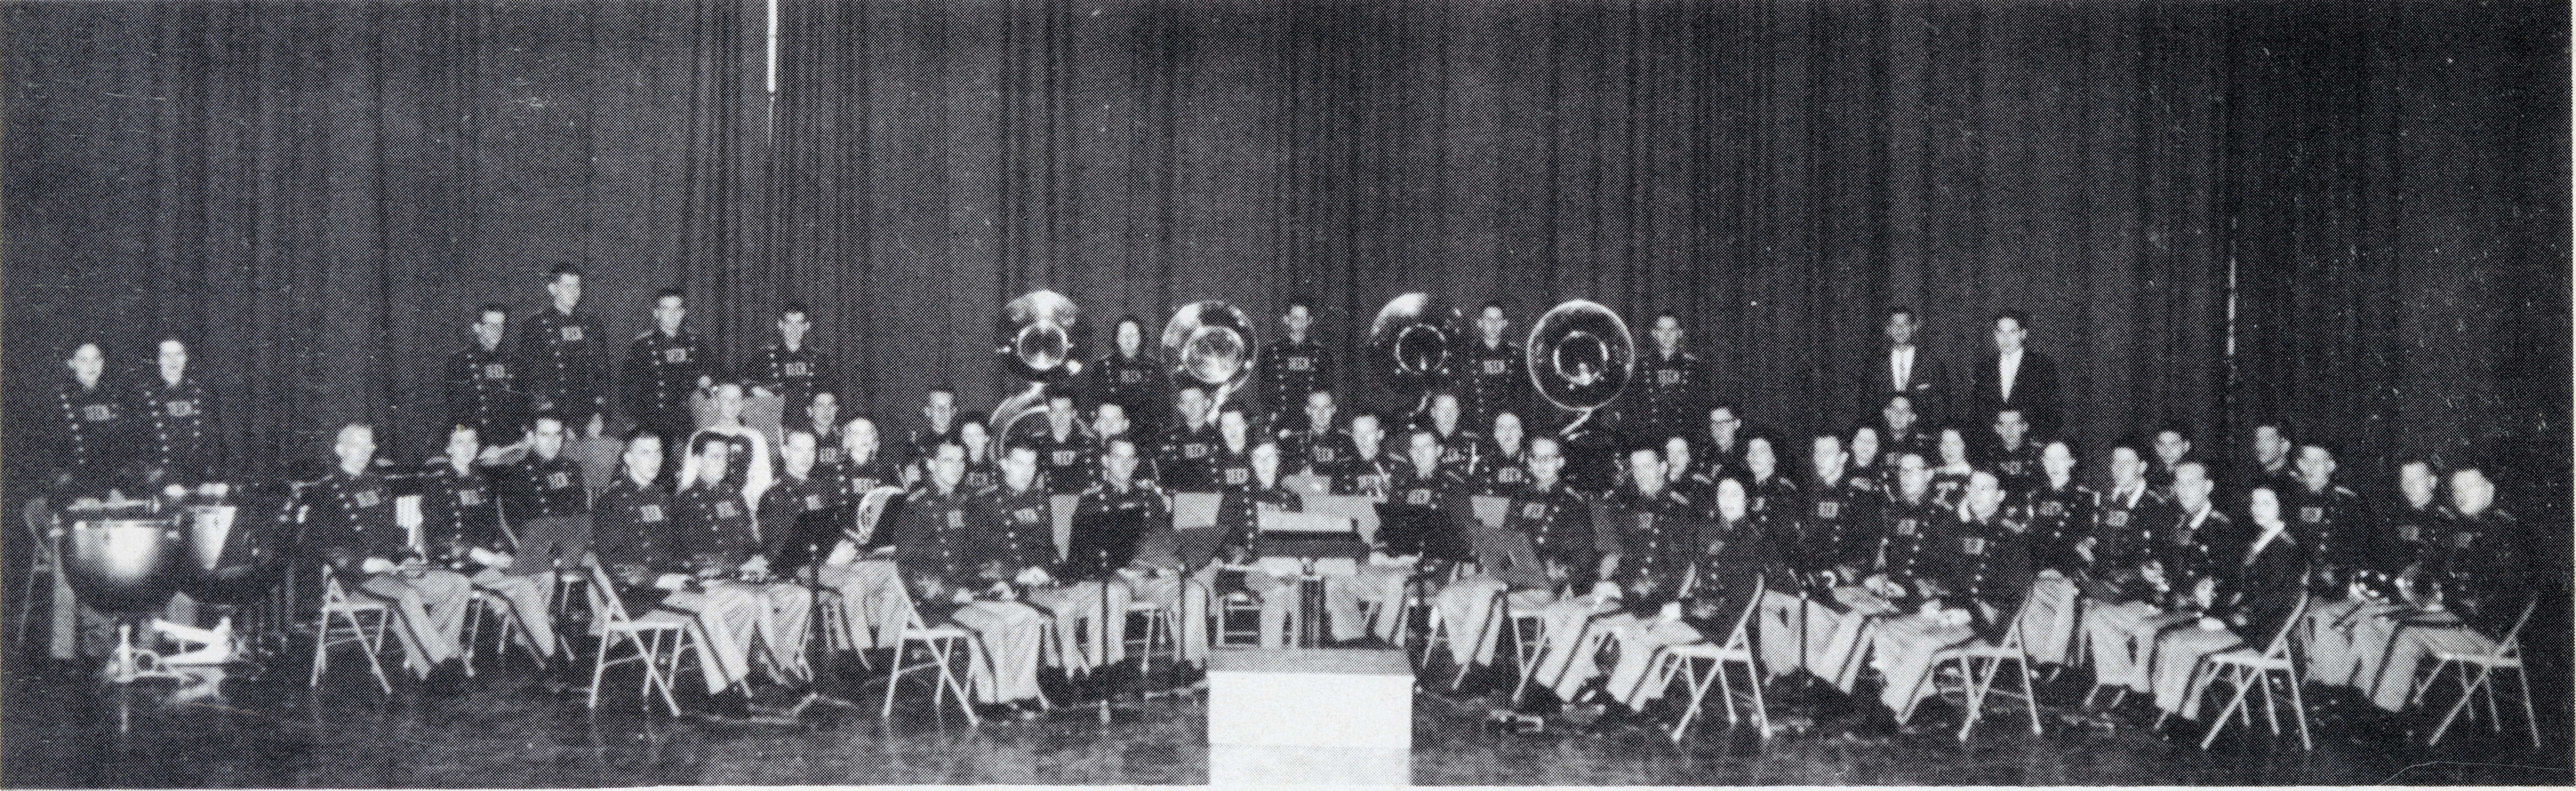 1958 Arkansas Tech Concert Band